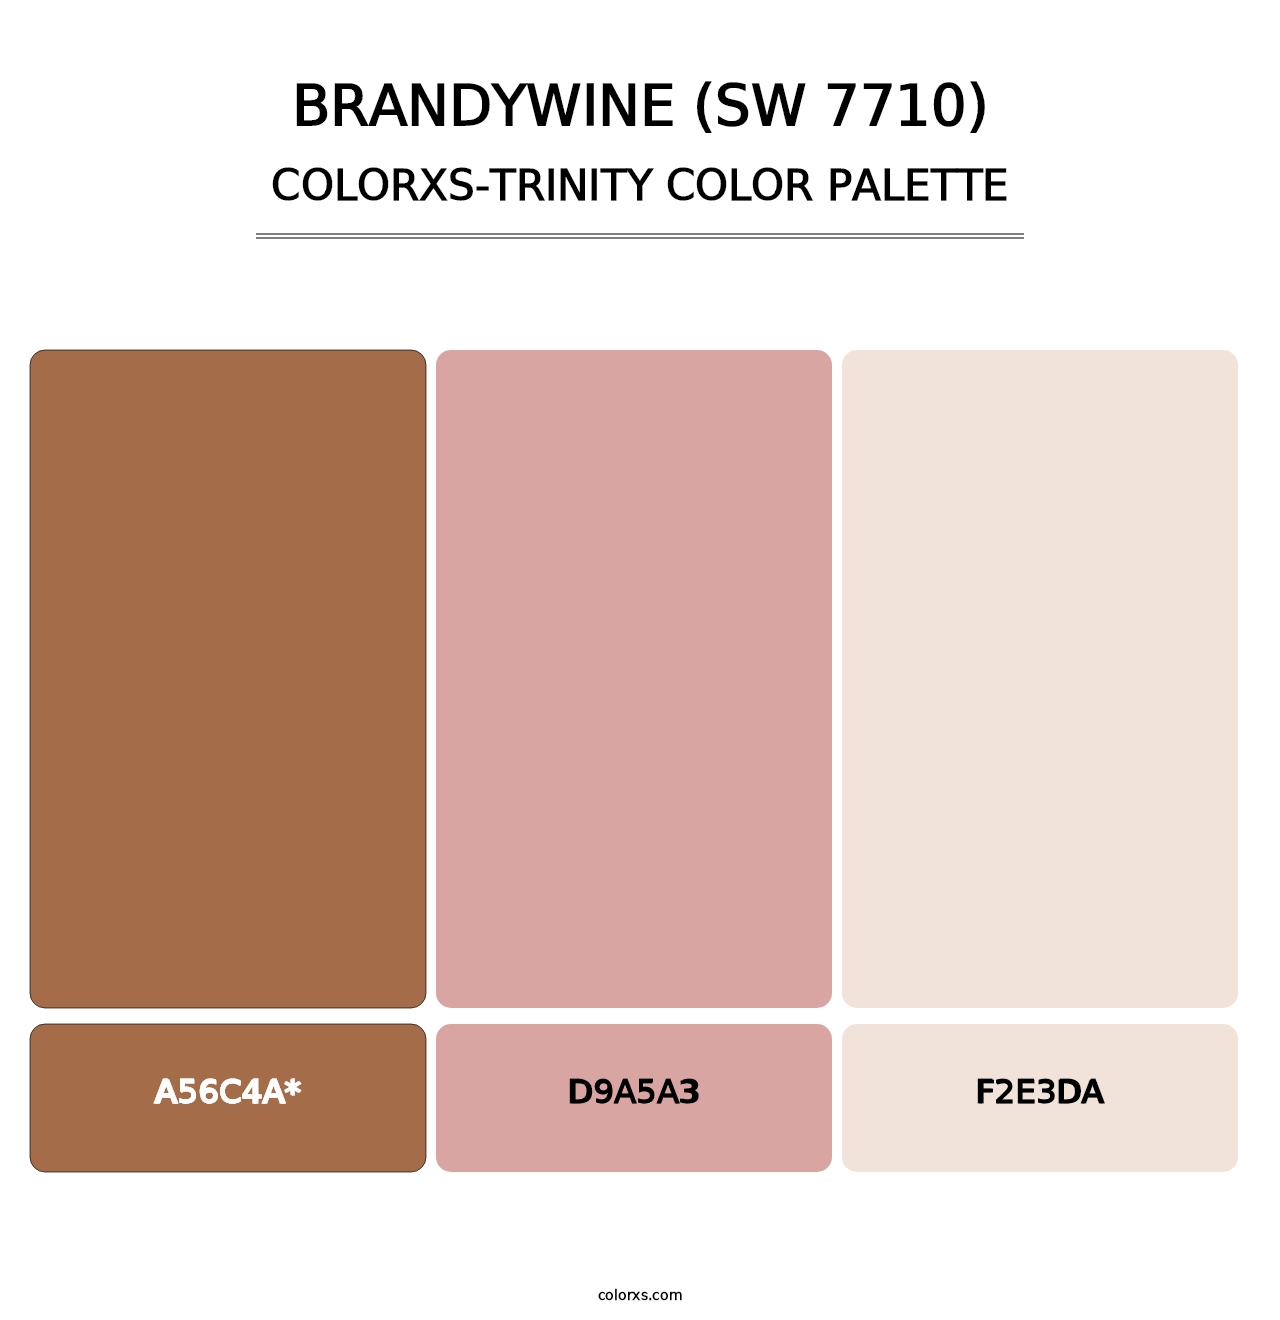 Brandywine (SW 7710) - Colorxs Trinity Palette